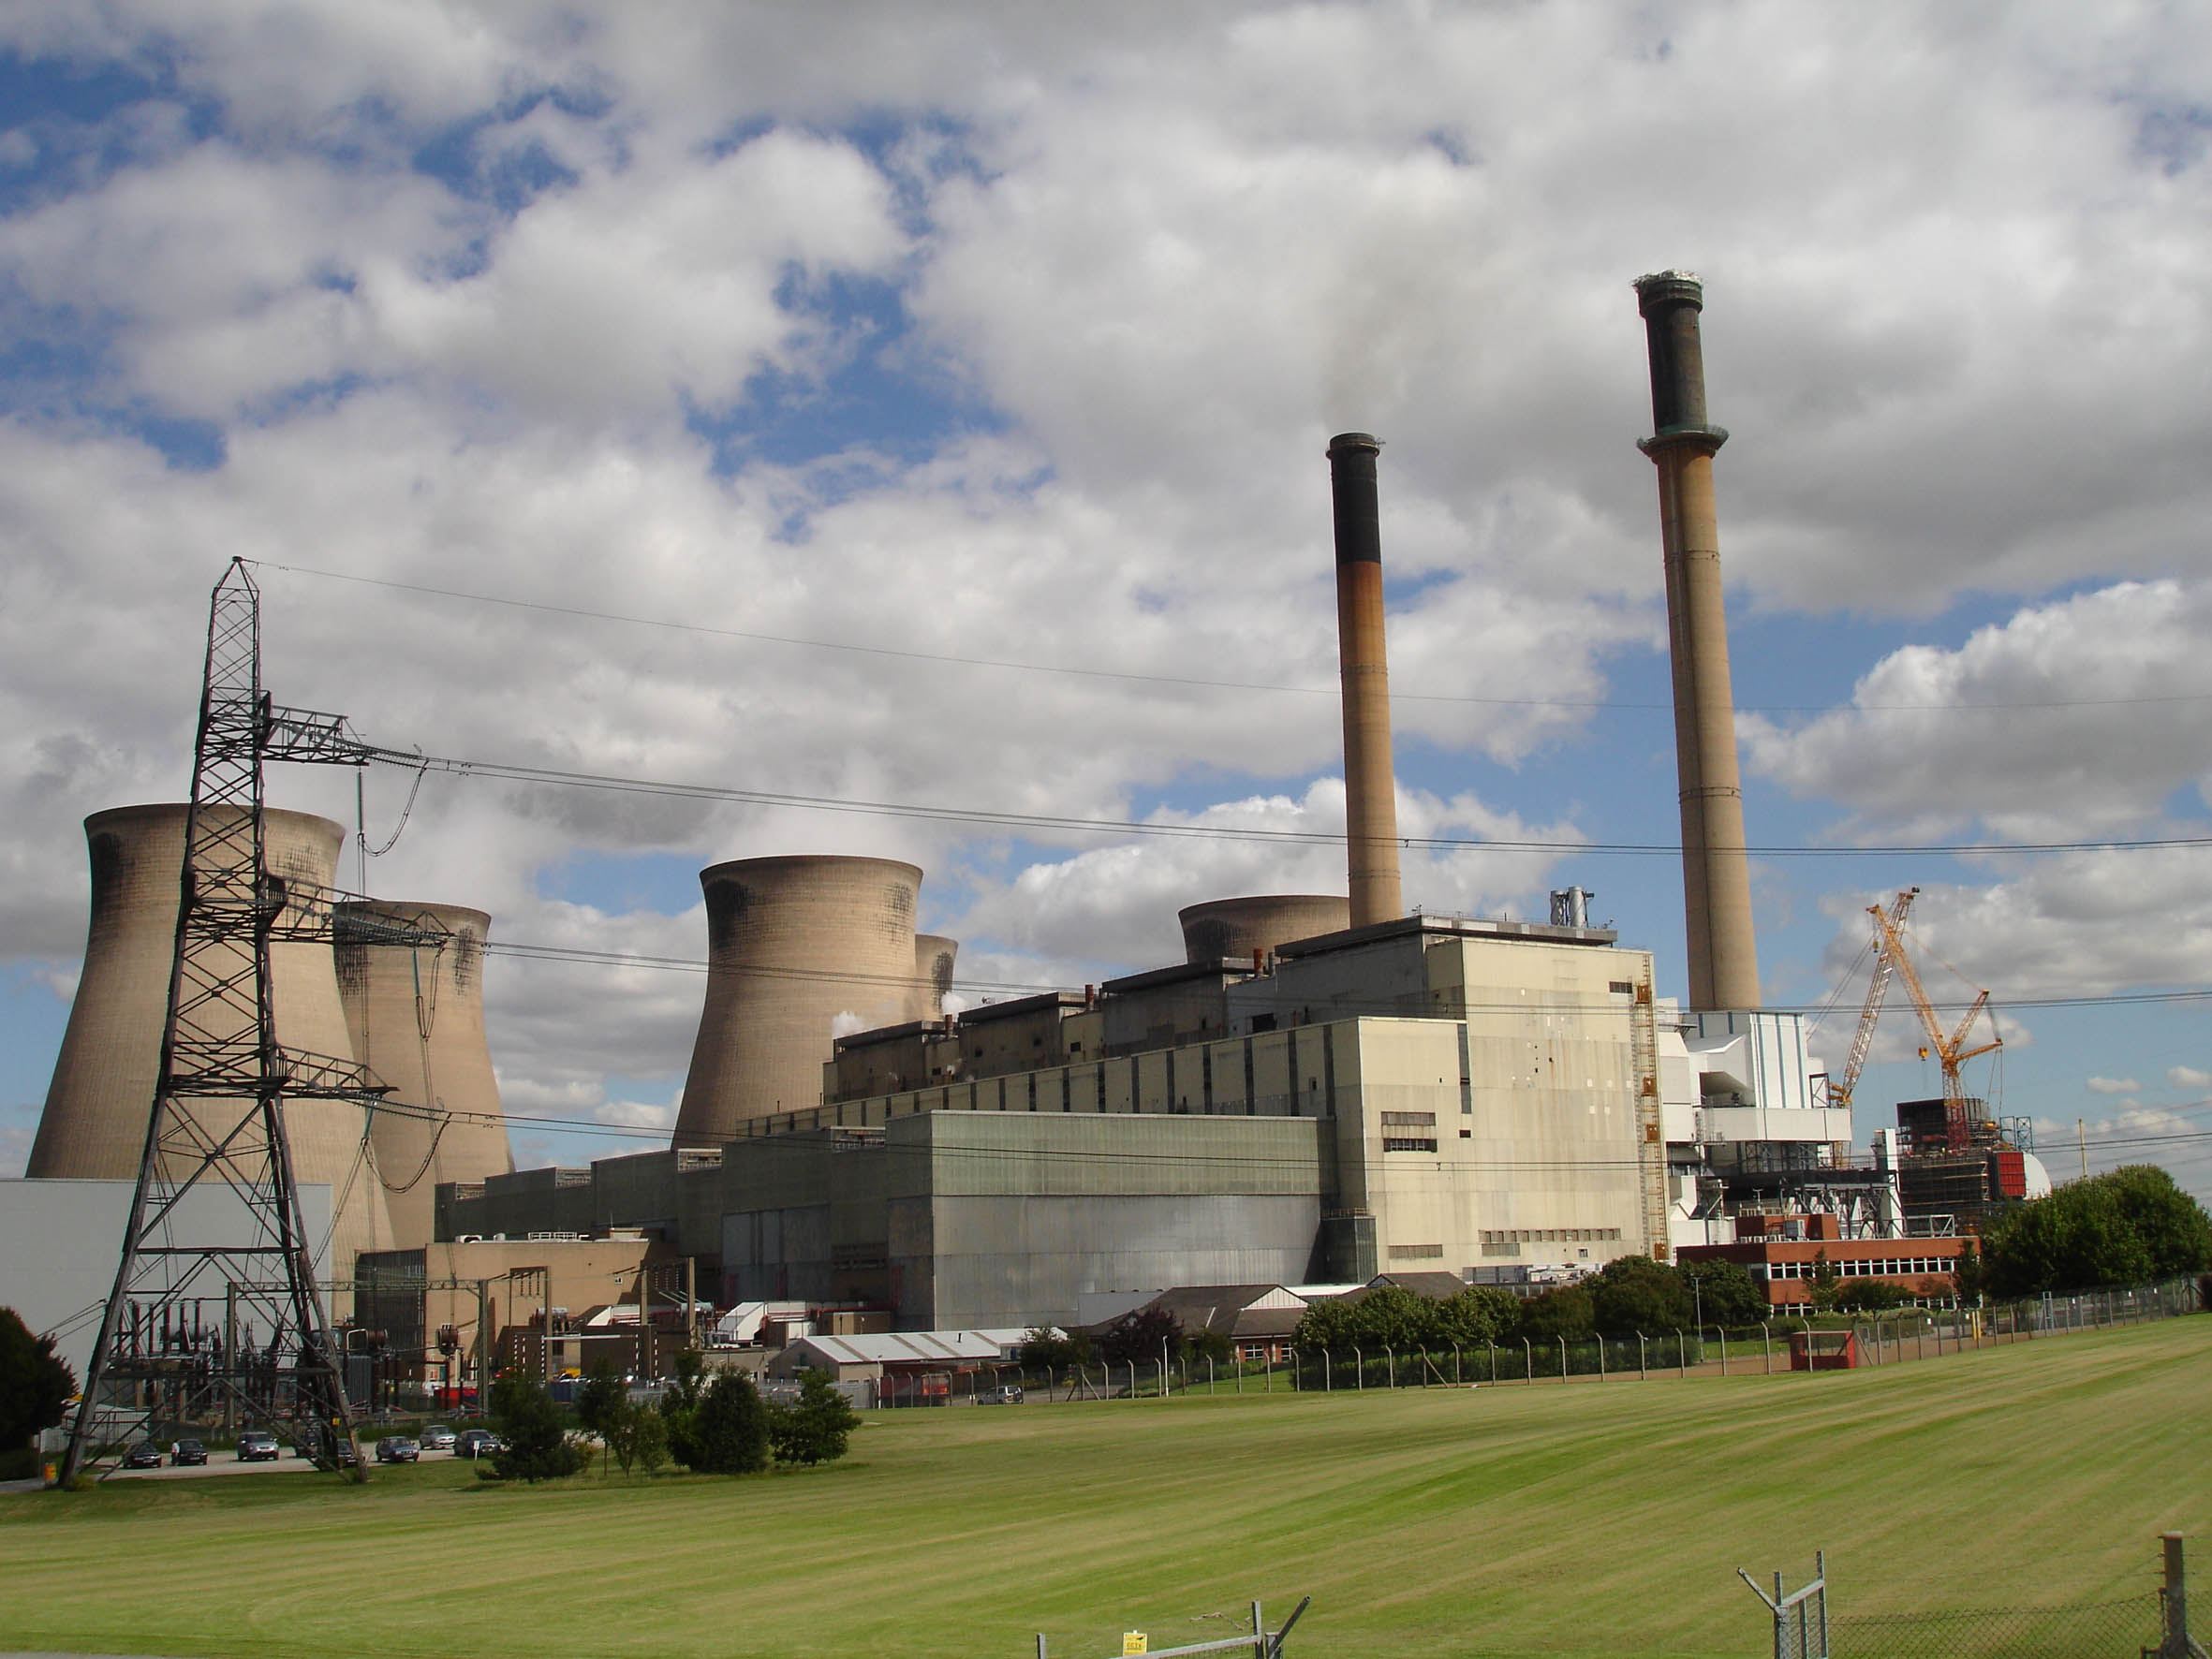 旋转actuators selected for environmental improvement project at Ferrybridge Power Station